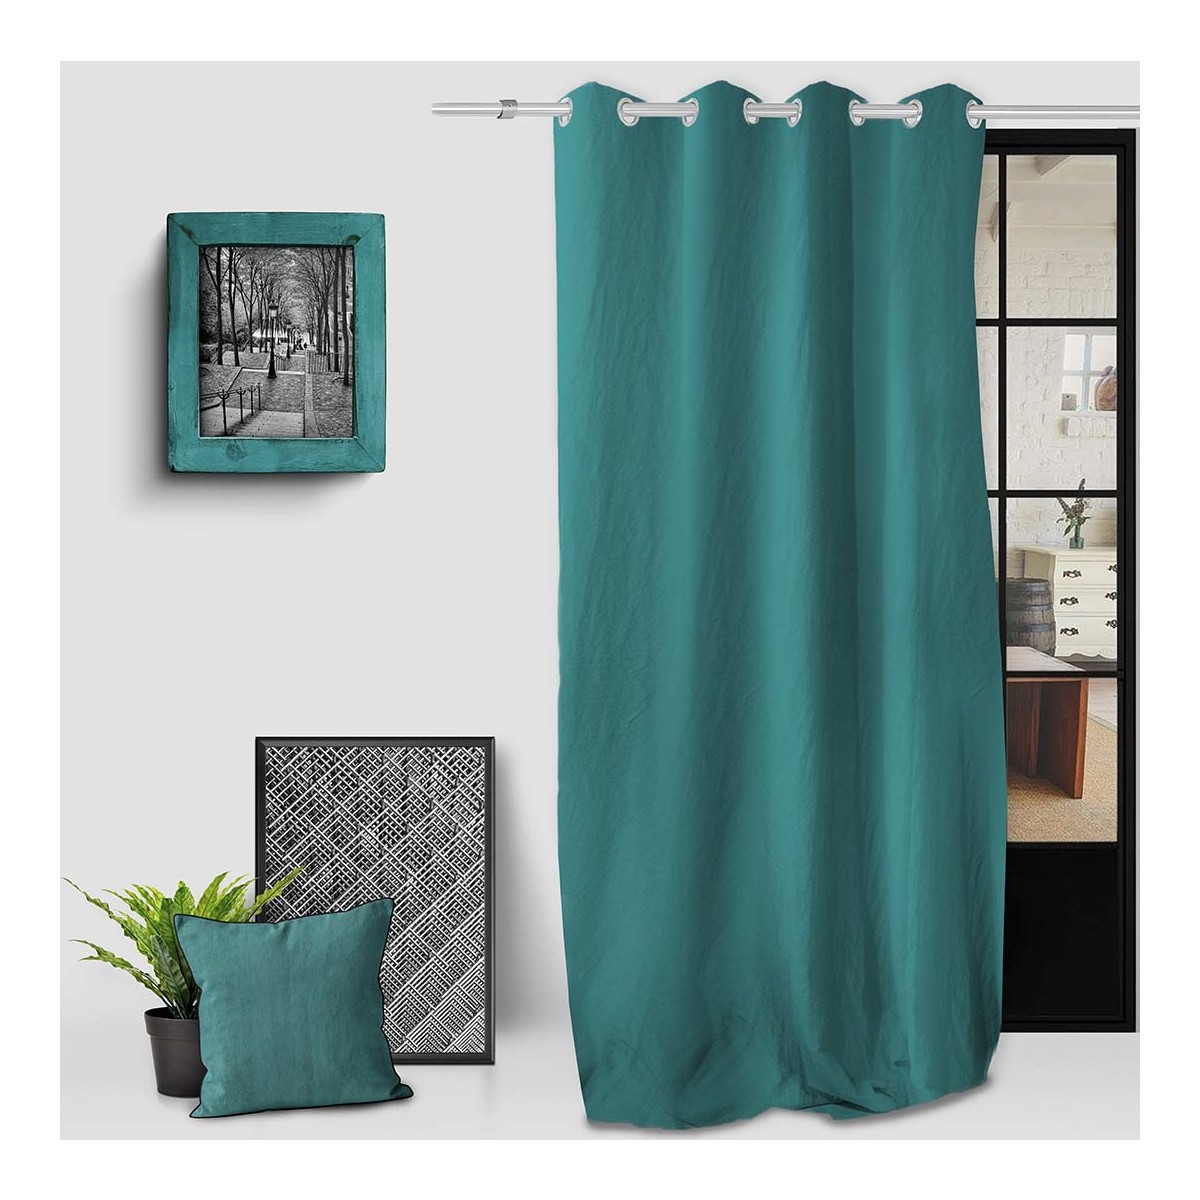 Home Curtains & blinds Soleil D'Ocre BOHEME Blue